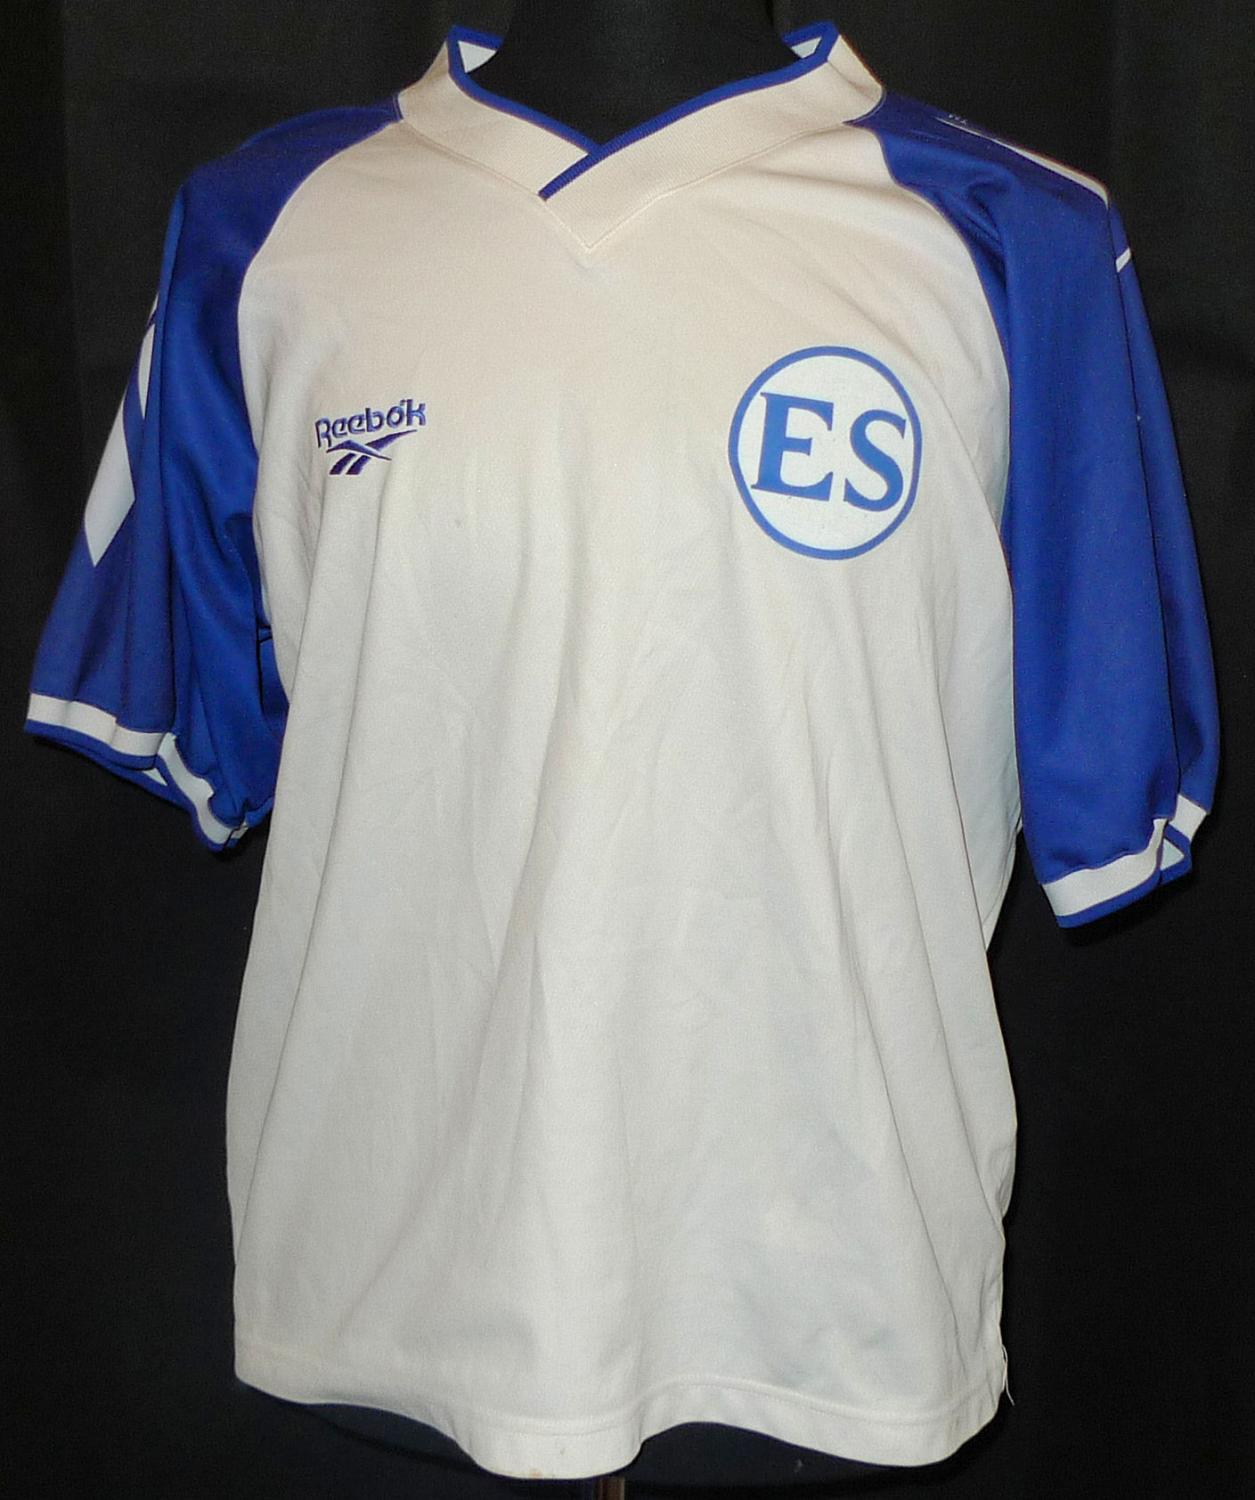 El Salvador Home football shirt 2000 - 2001.